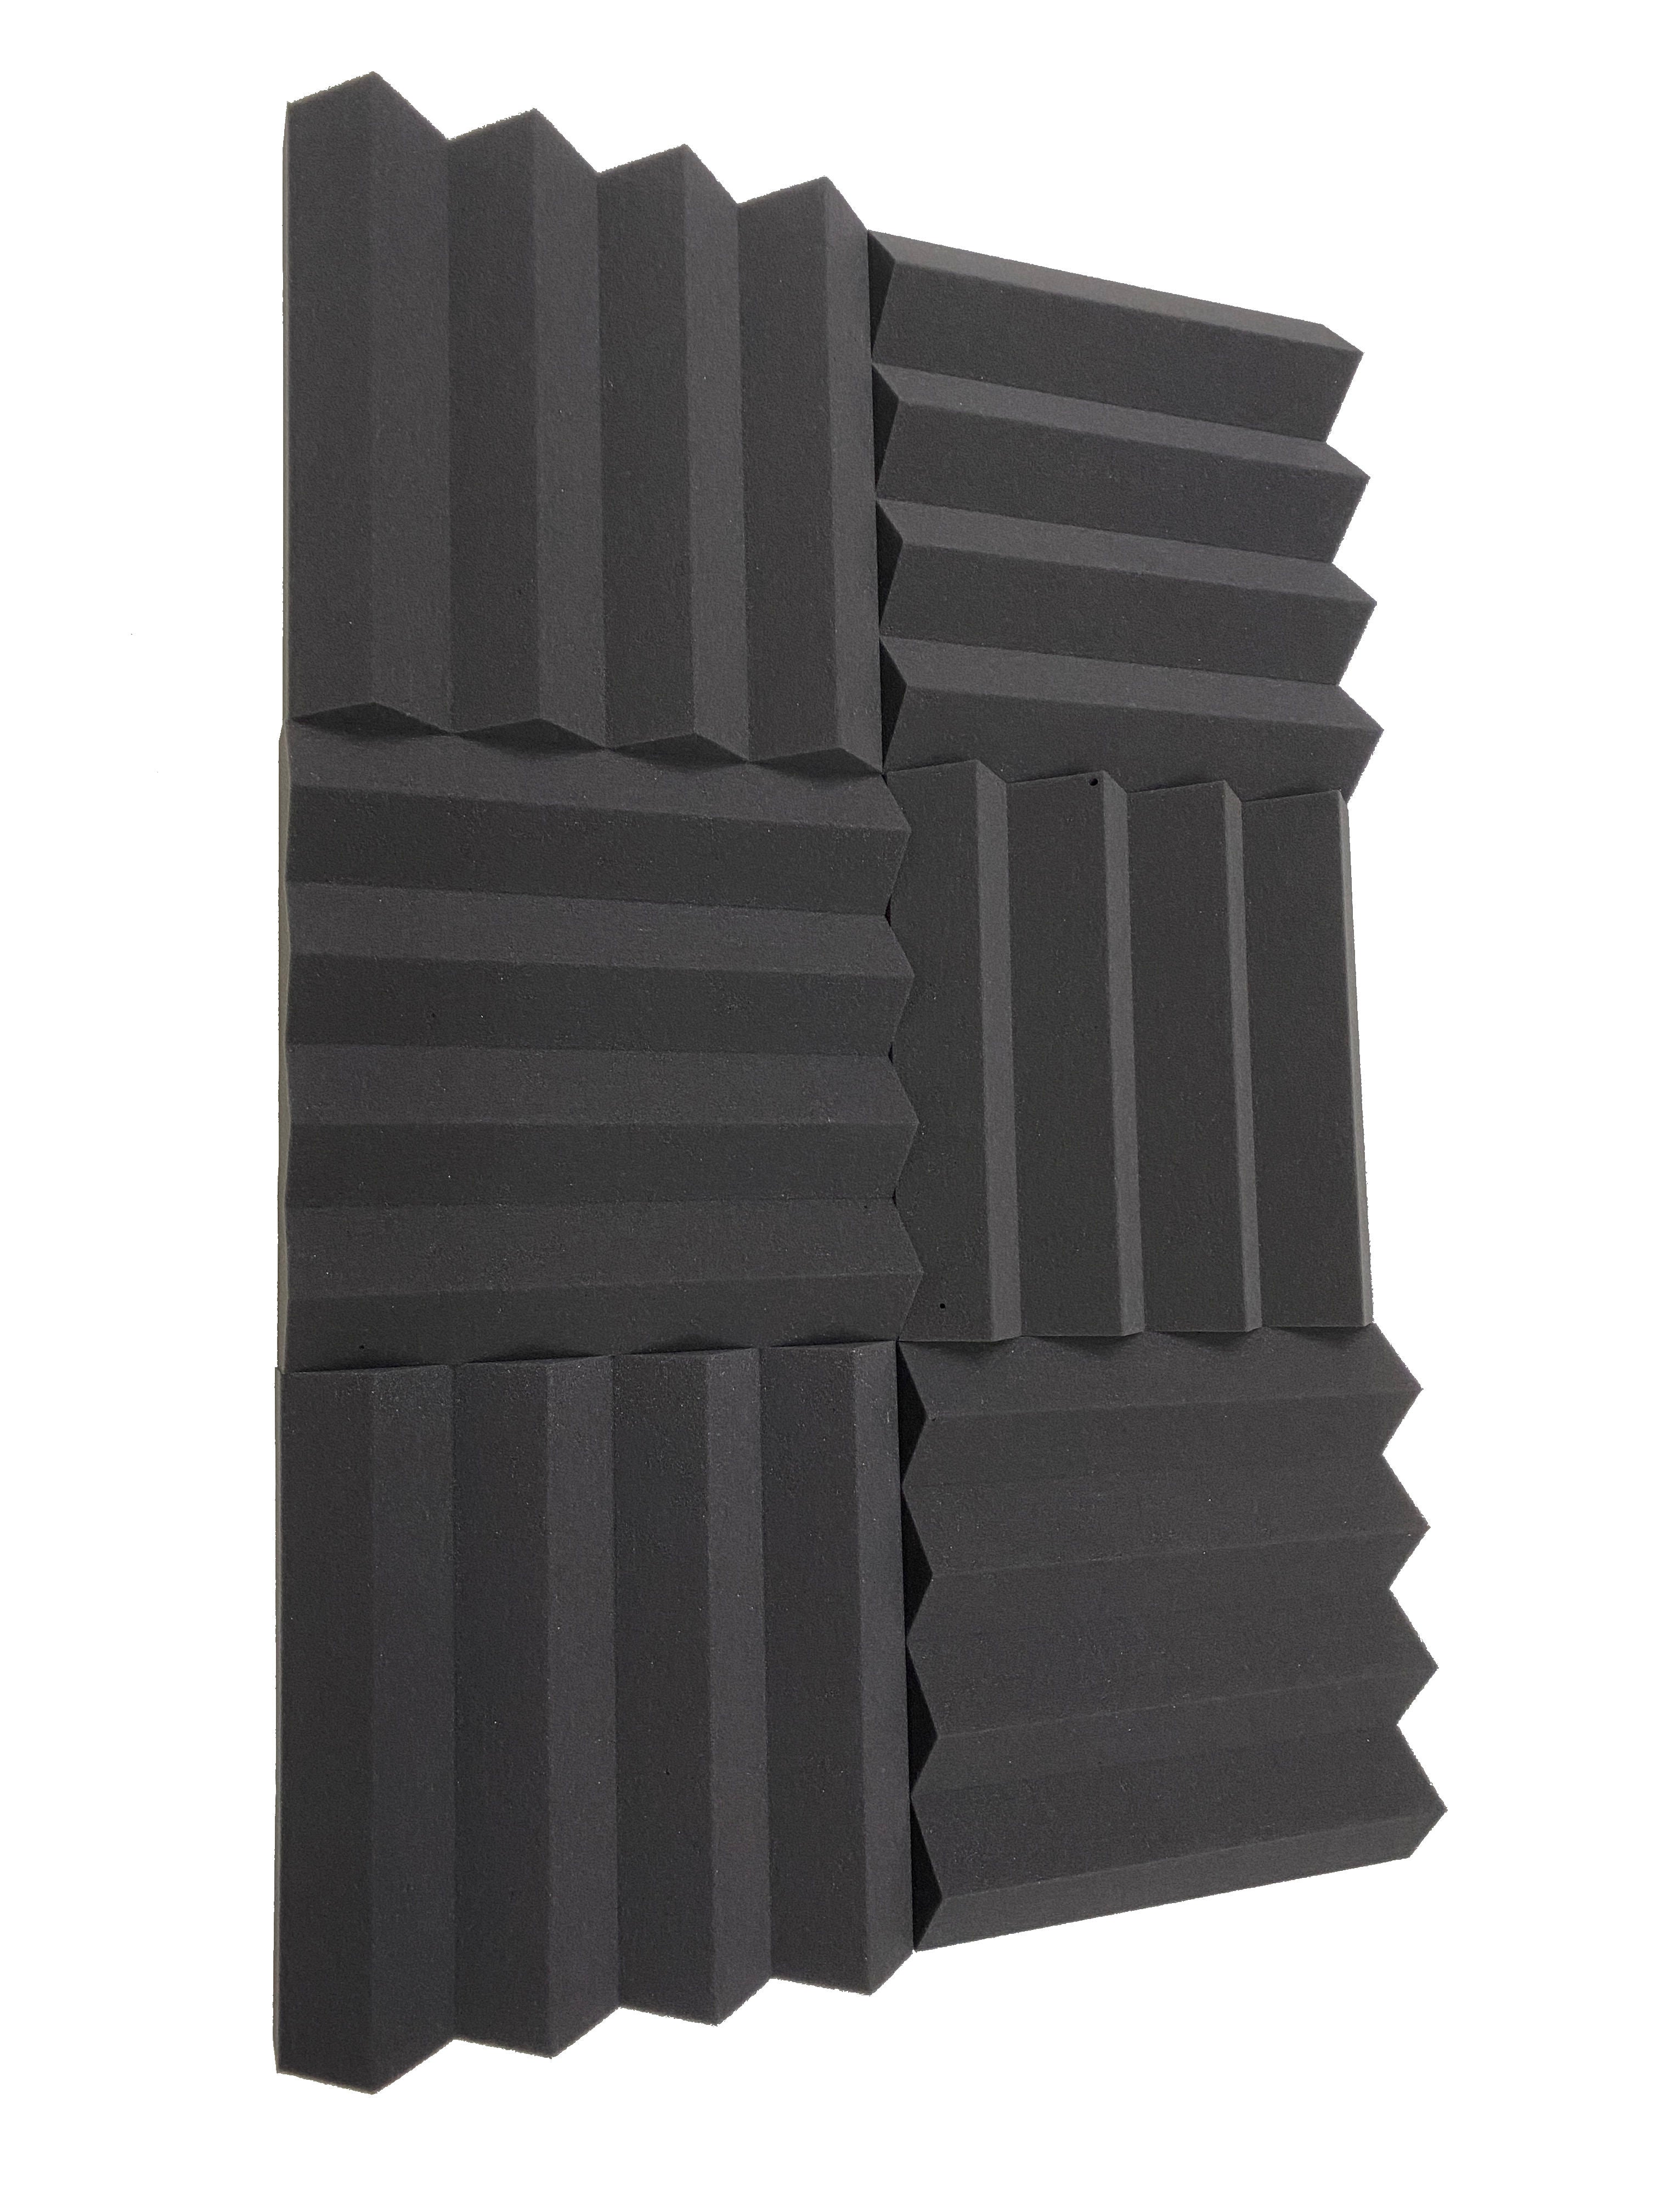 Wedge PRO 12" Acoustic Studio Foam Tile Pack - 24 Tiles, 2.2qm Coverage